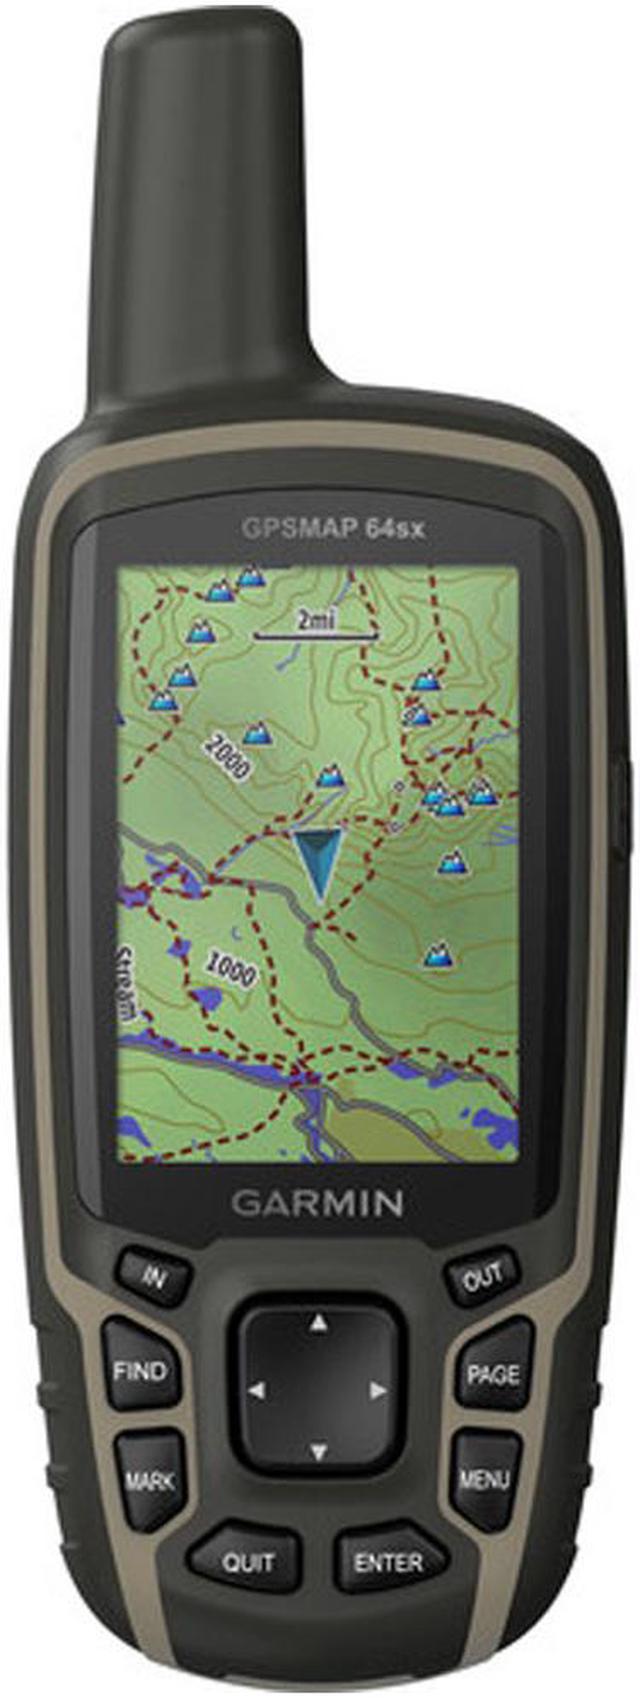 Garmin GPSMAP 64sx Handheld GPS Navigator Handheld Mountable 